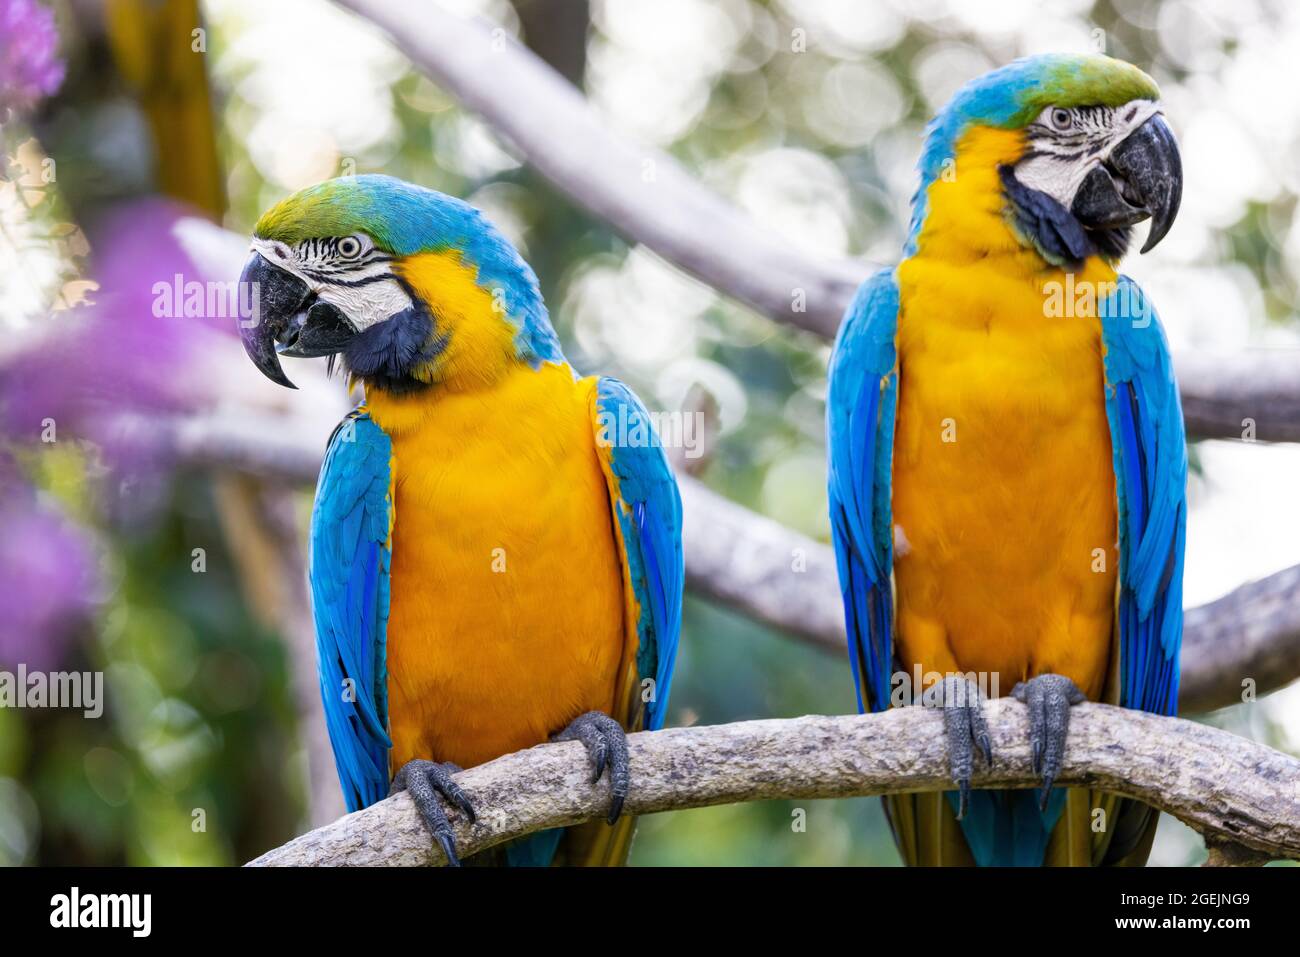 Dos coloridas guacamayas amarillas y azules encaramadas en la misma rama y mirando en dirección opuesta contra un fondo bokeh Foto de stock